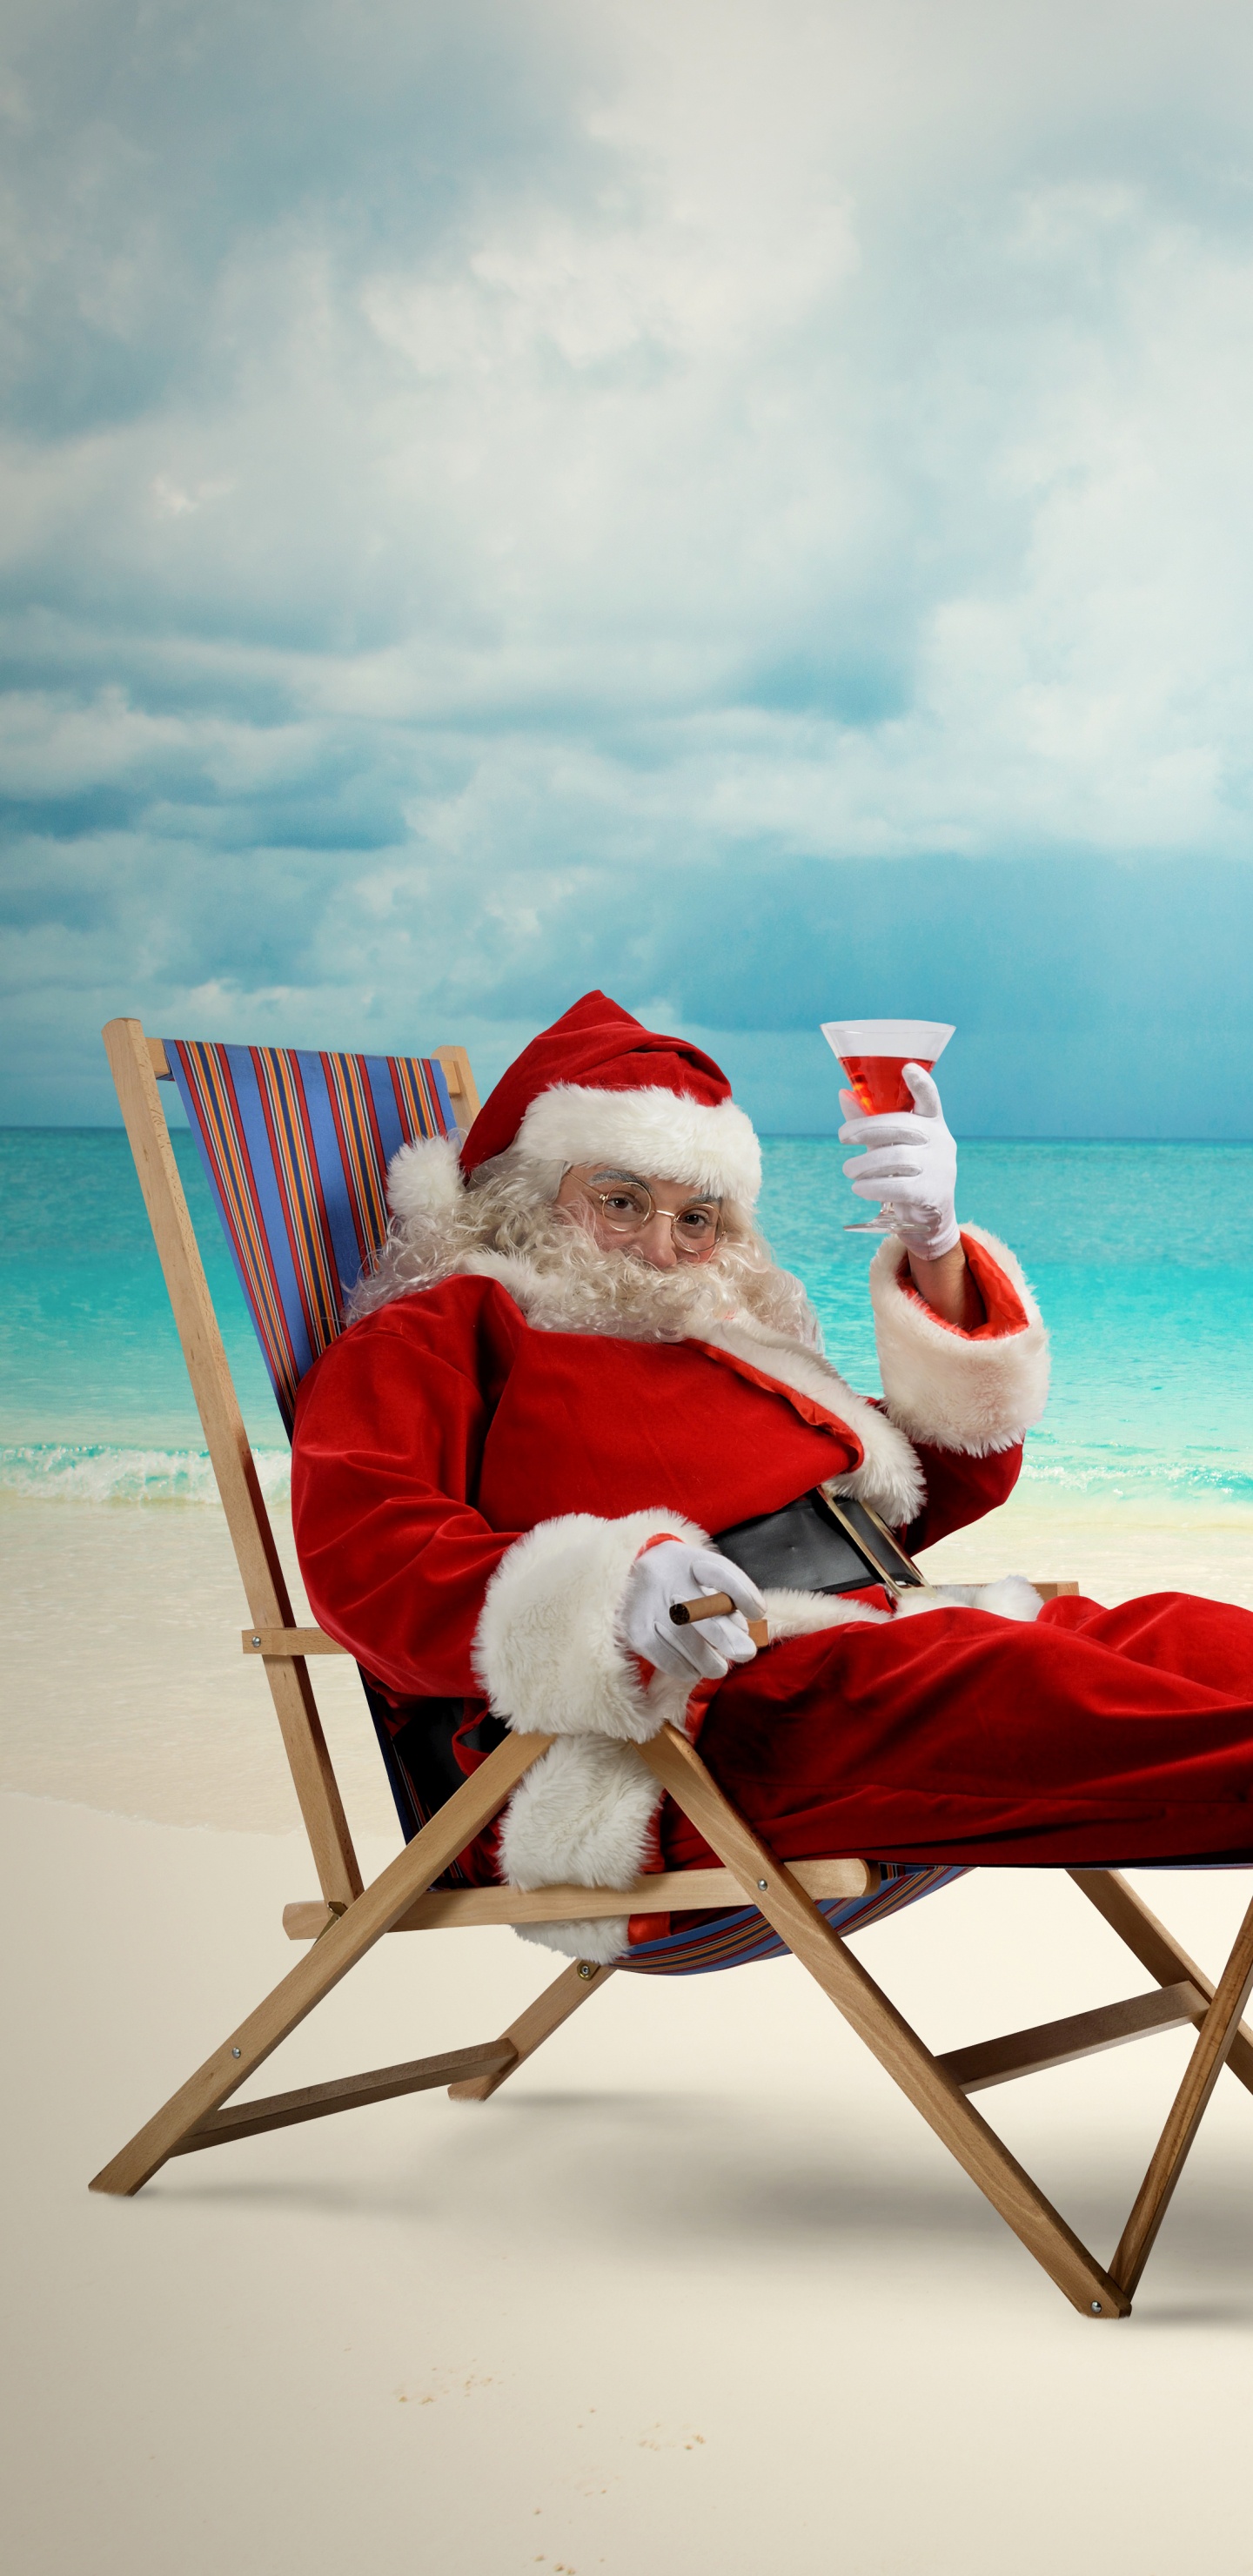 Обои Санта-Клаус, Рождественский день, пляж, море, отпуск в разрешении 1440x2960